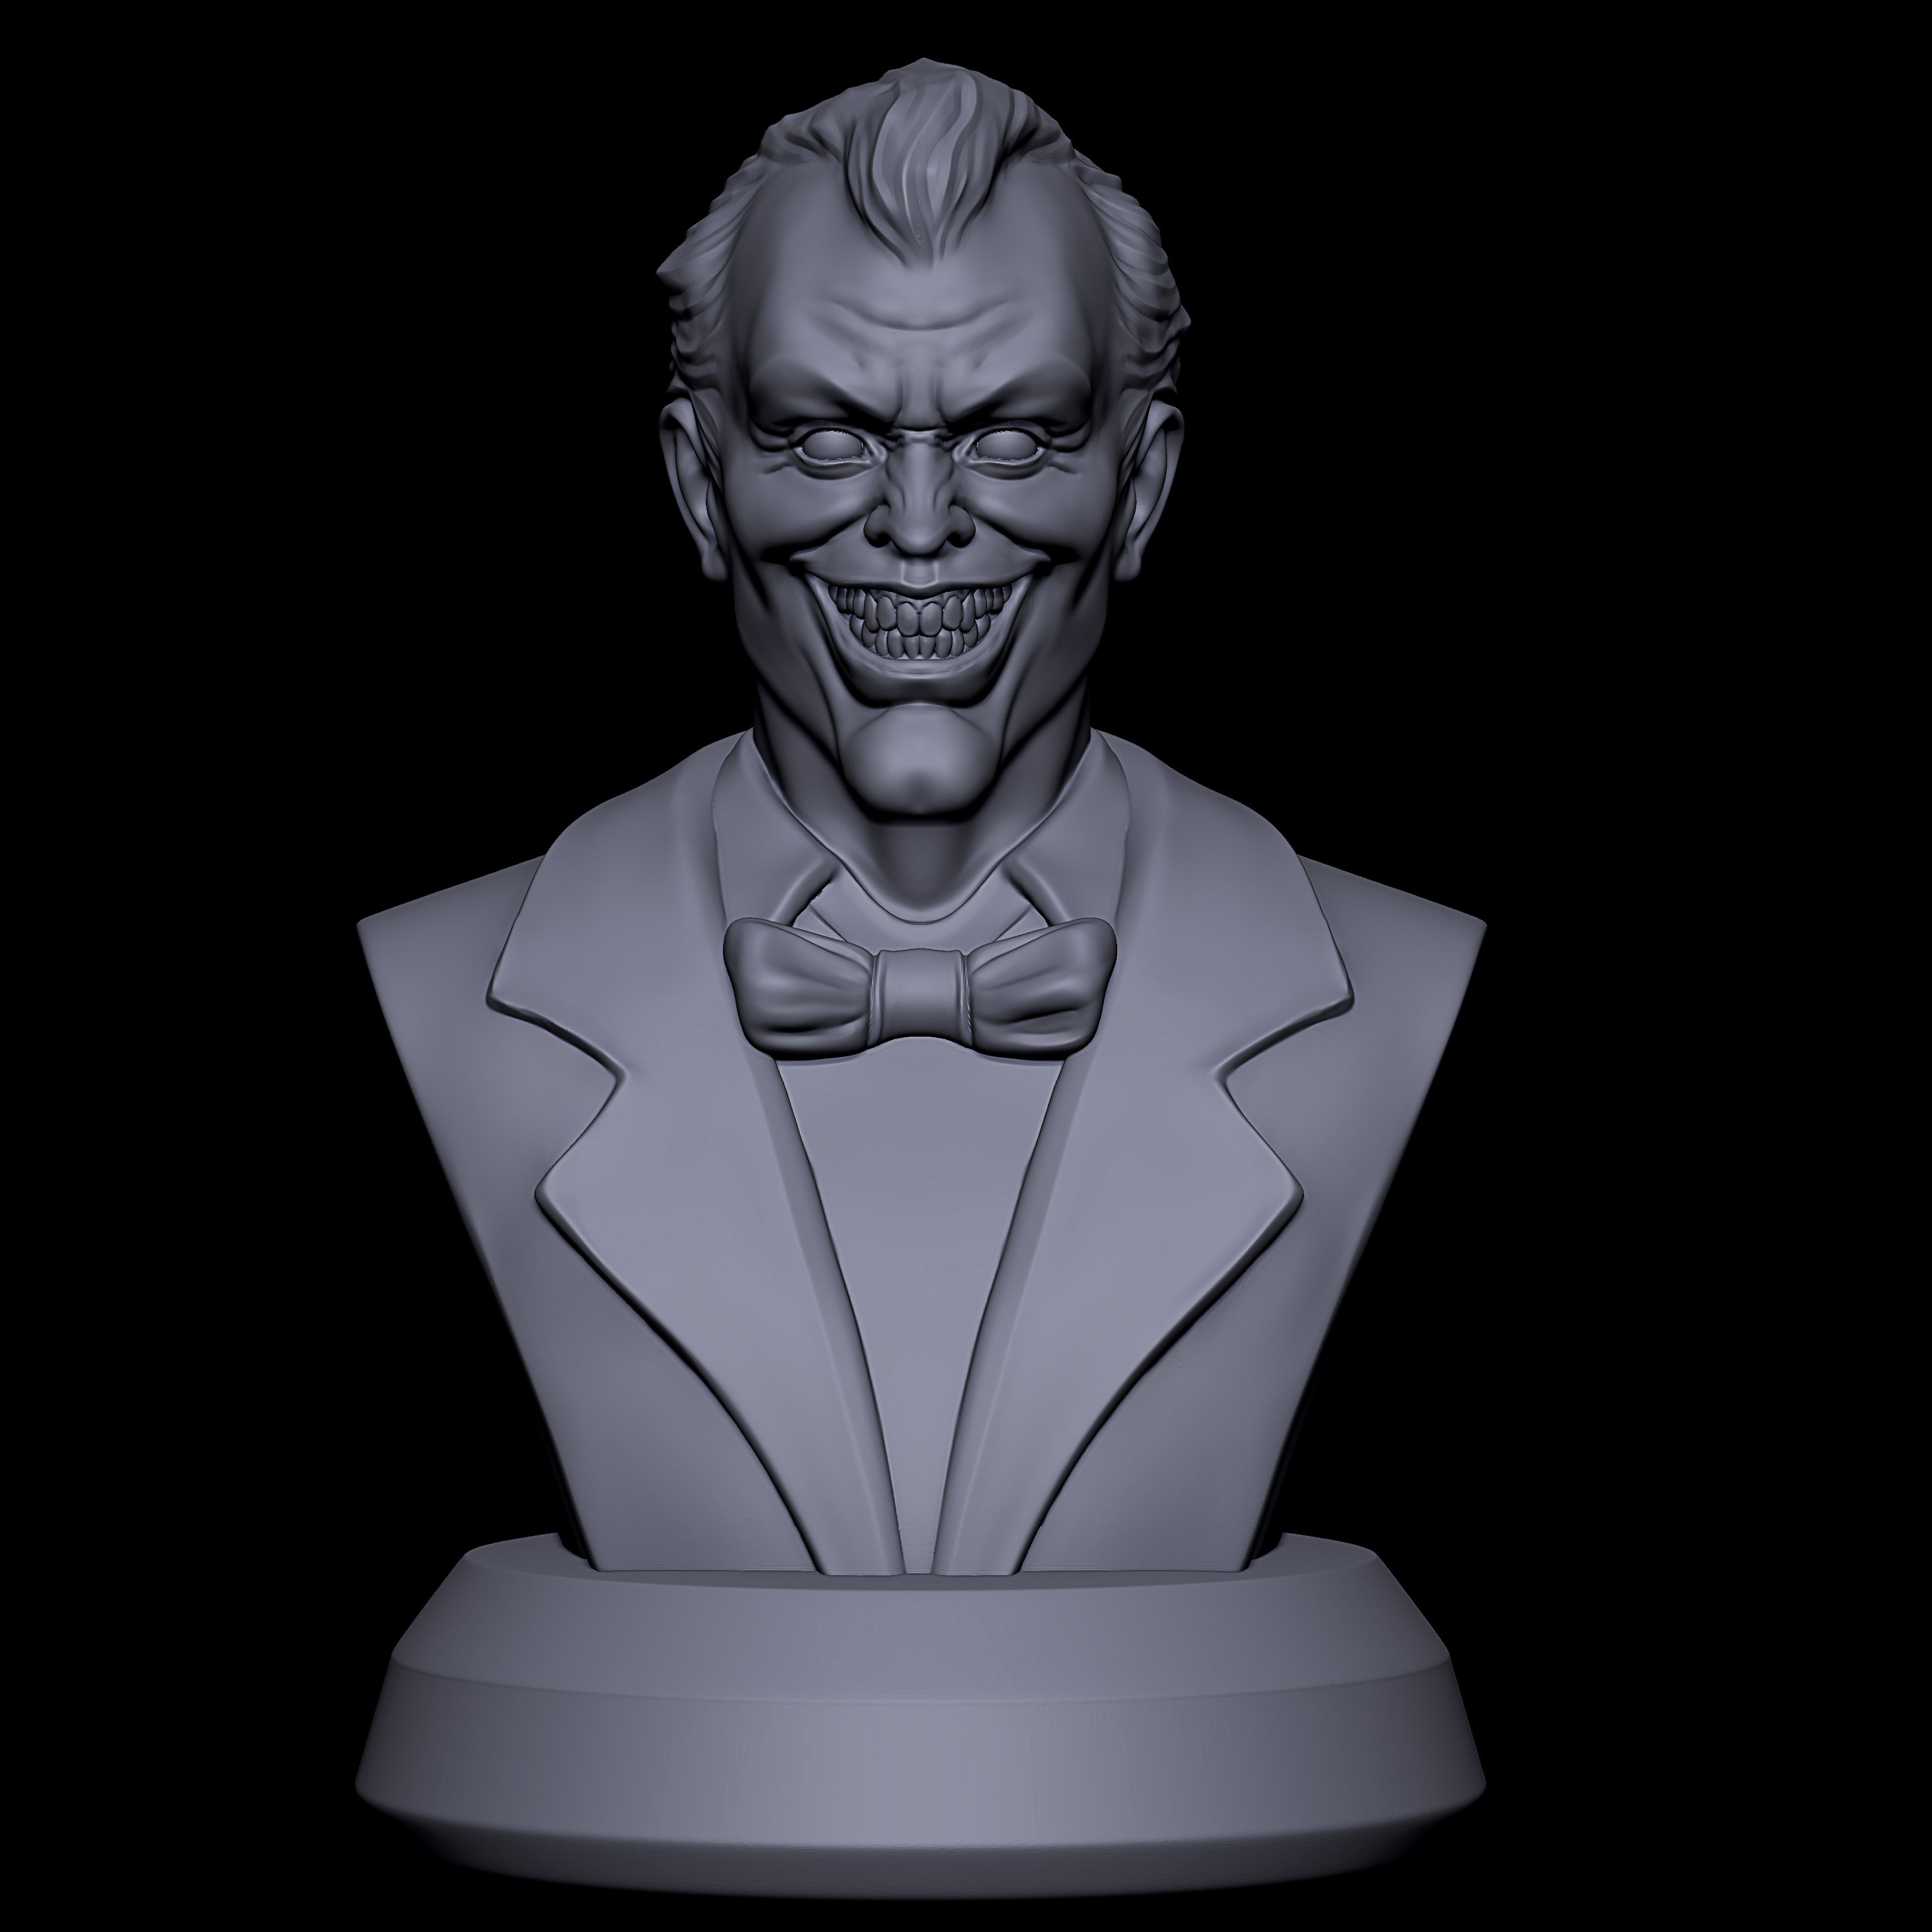 Download OBJ file Joker • 3D print object ・ Cults